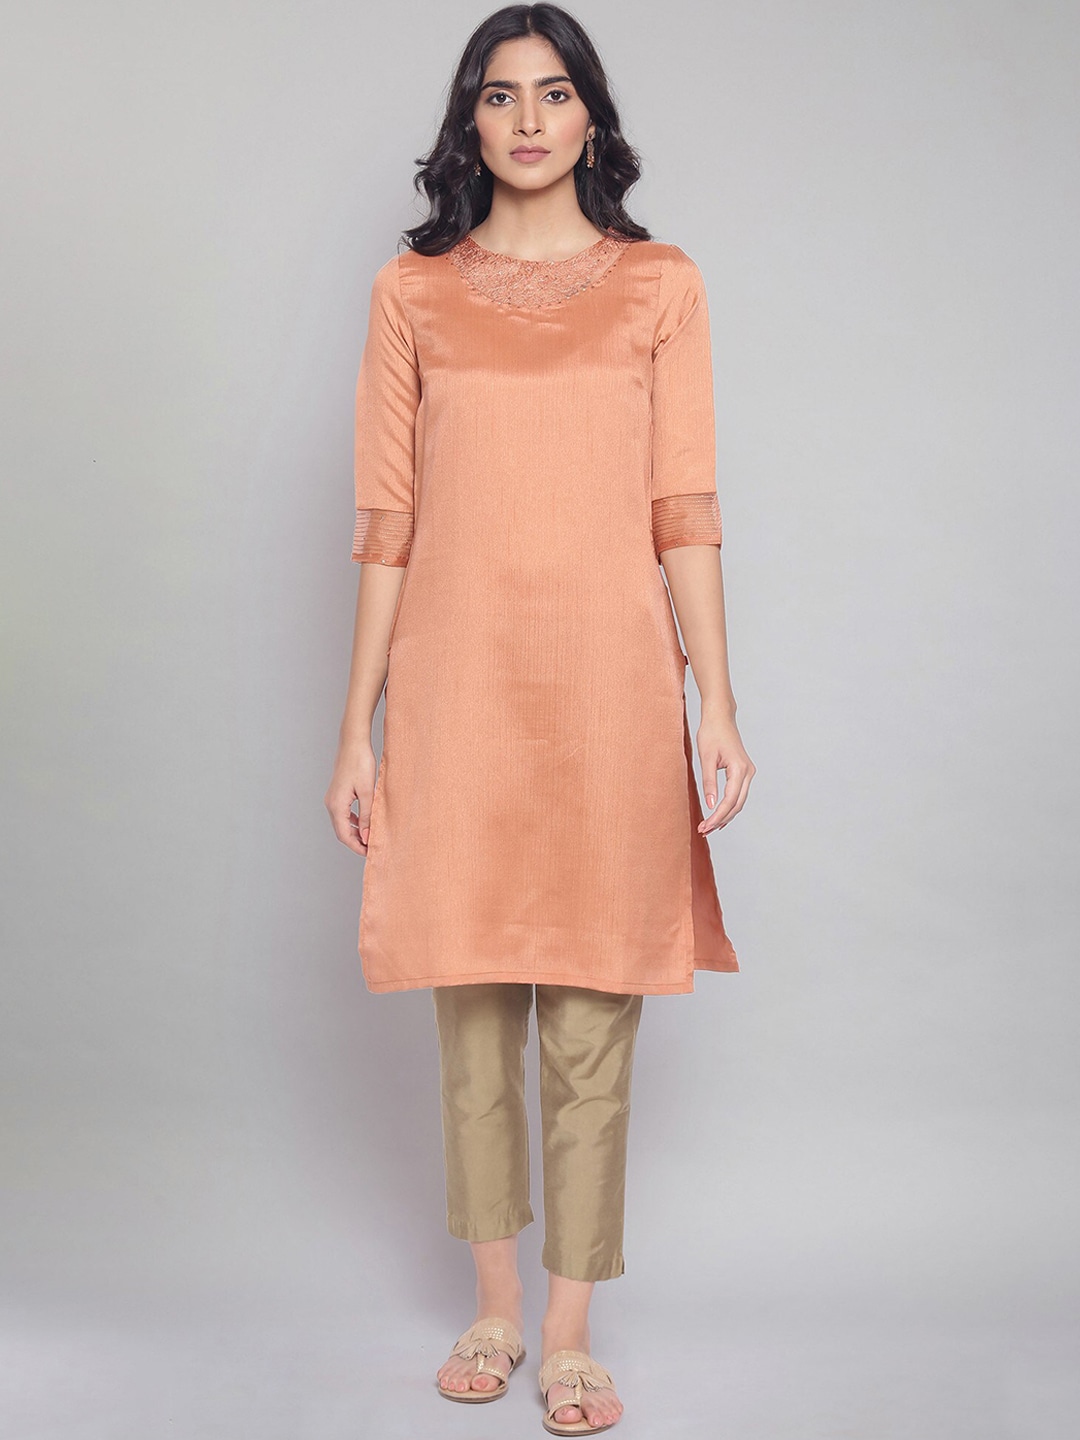 W Women Orange Yoke Design Thread Work Kurta Price in India